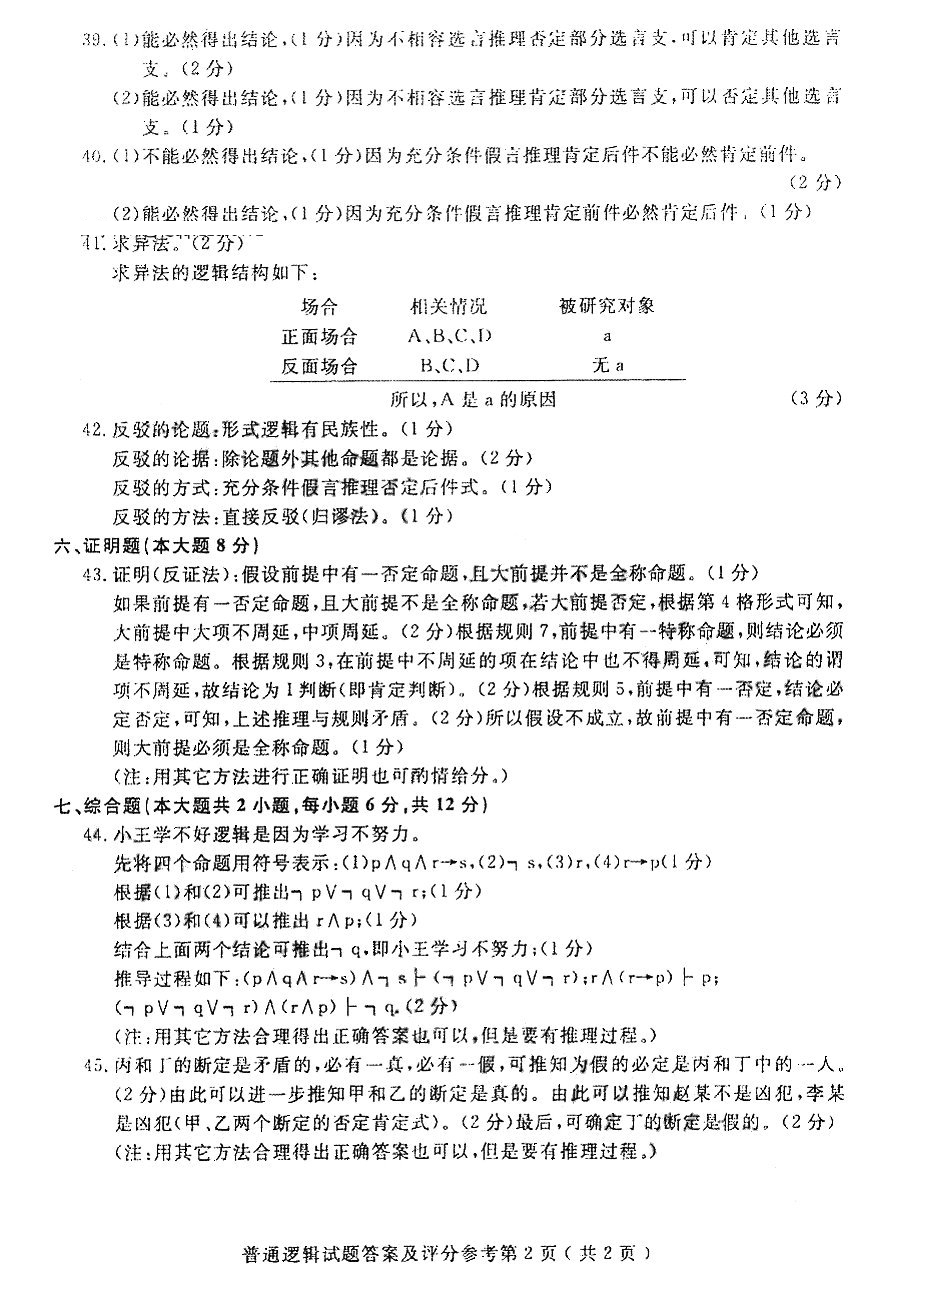 贵州省2016年04月自学考试00024普通逻辑